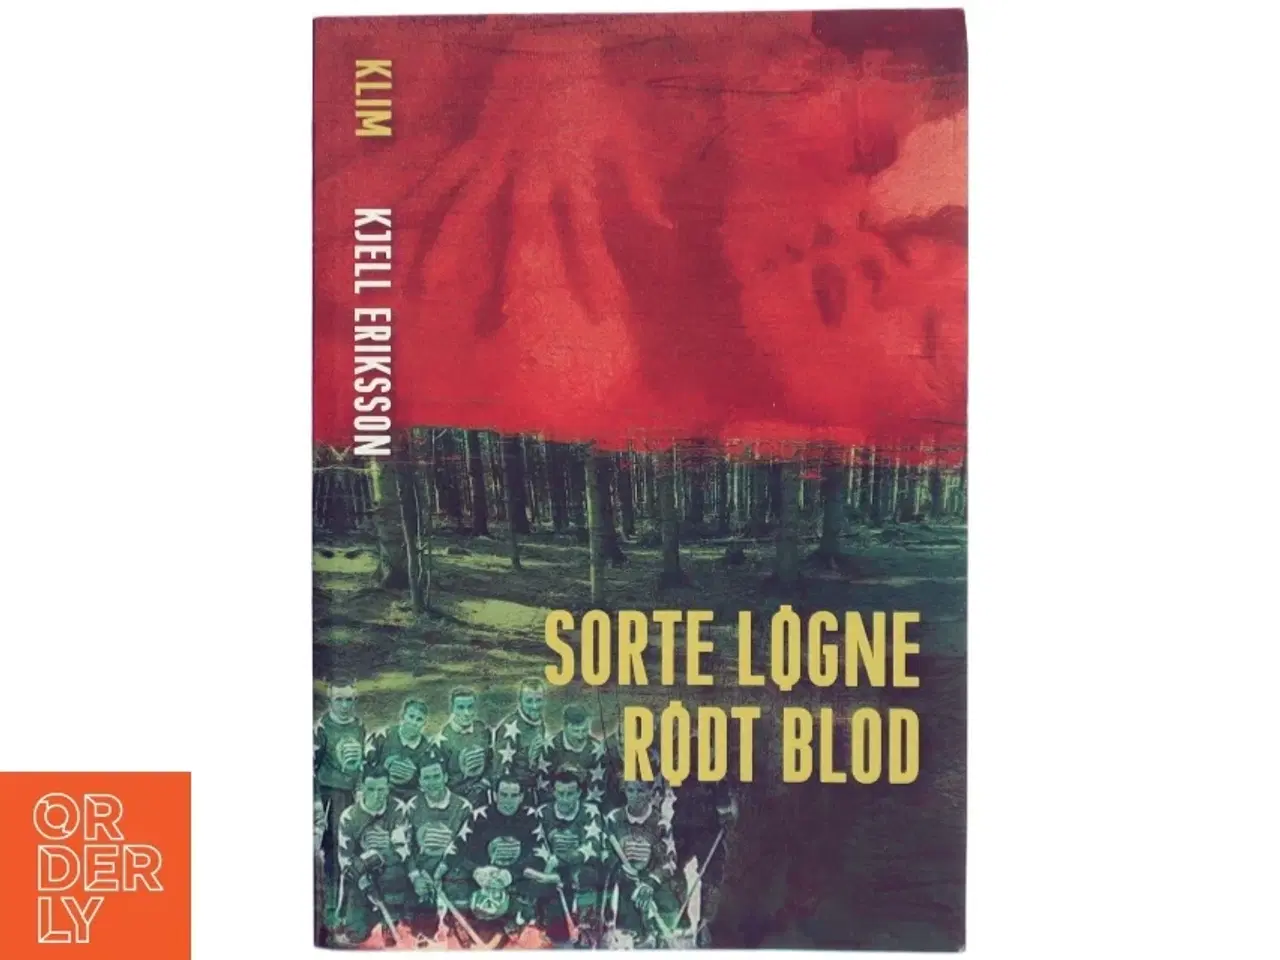 Billede 1 - 'Sorte løgne rødt blod' af Kjell Eriksson (bog)